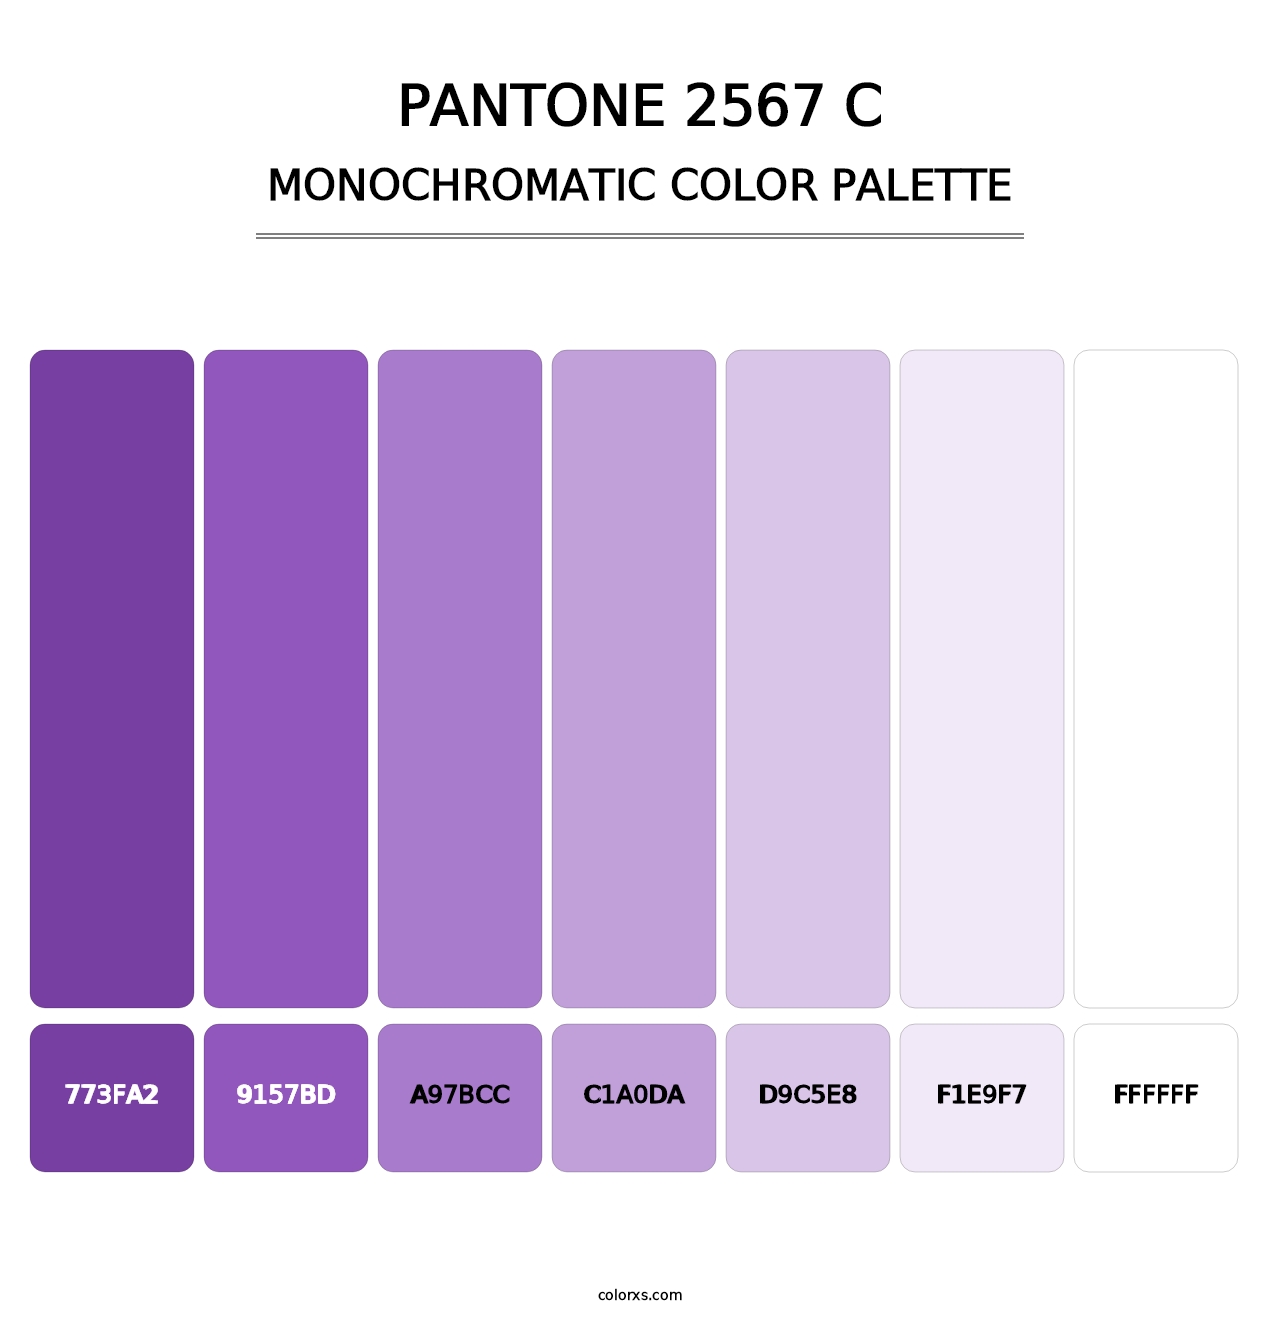 PANTONE 2567 C - Monochromatic Color Palette